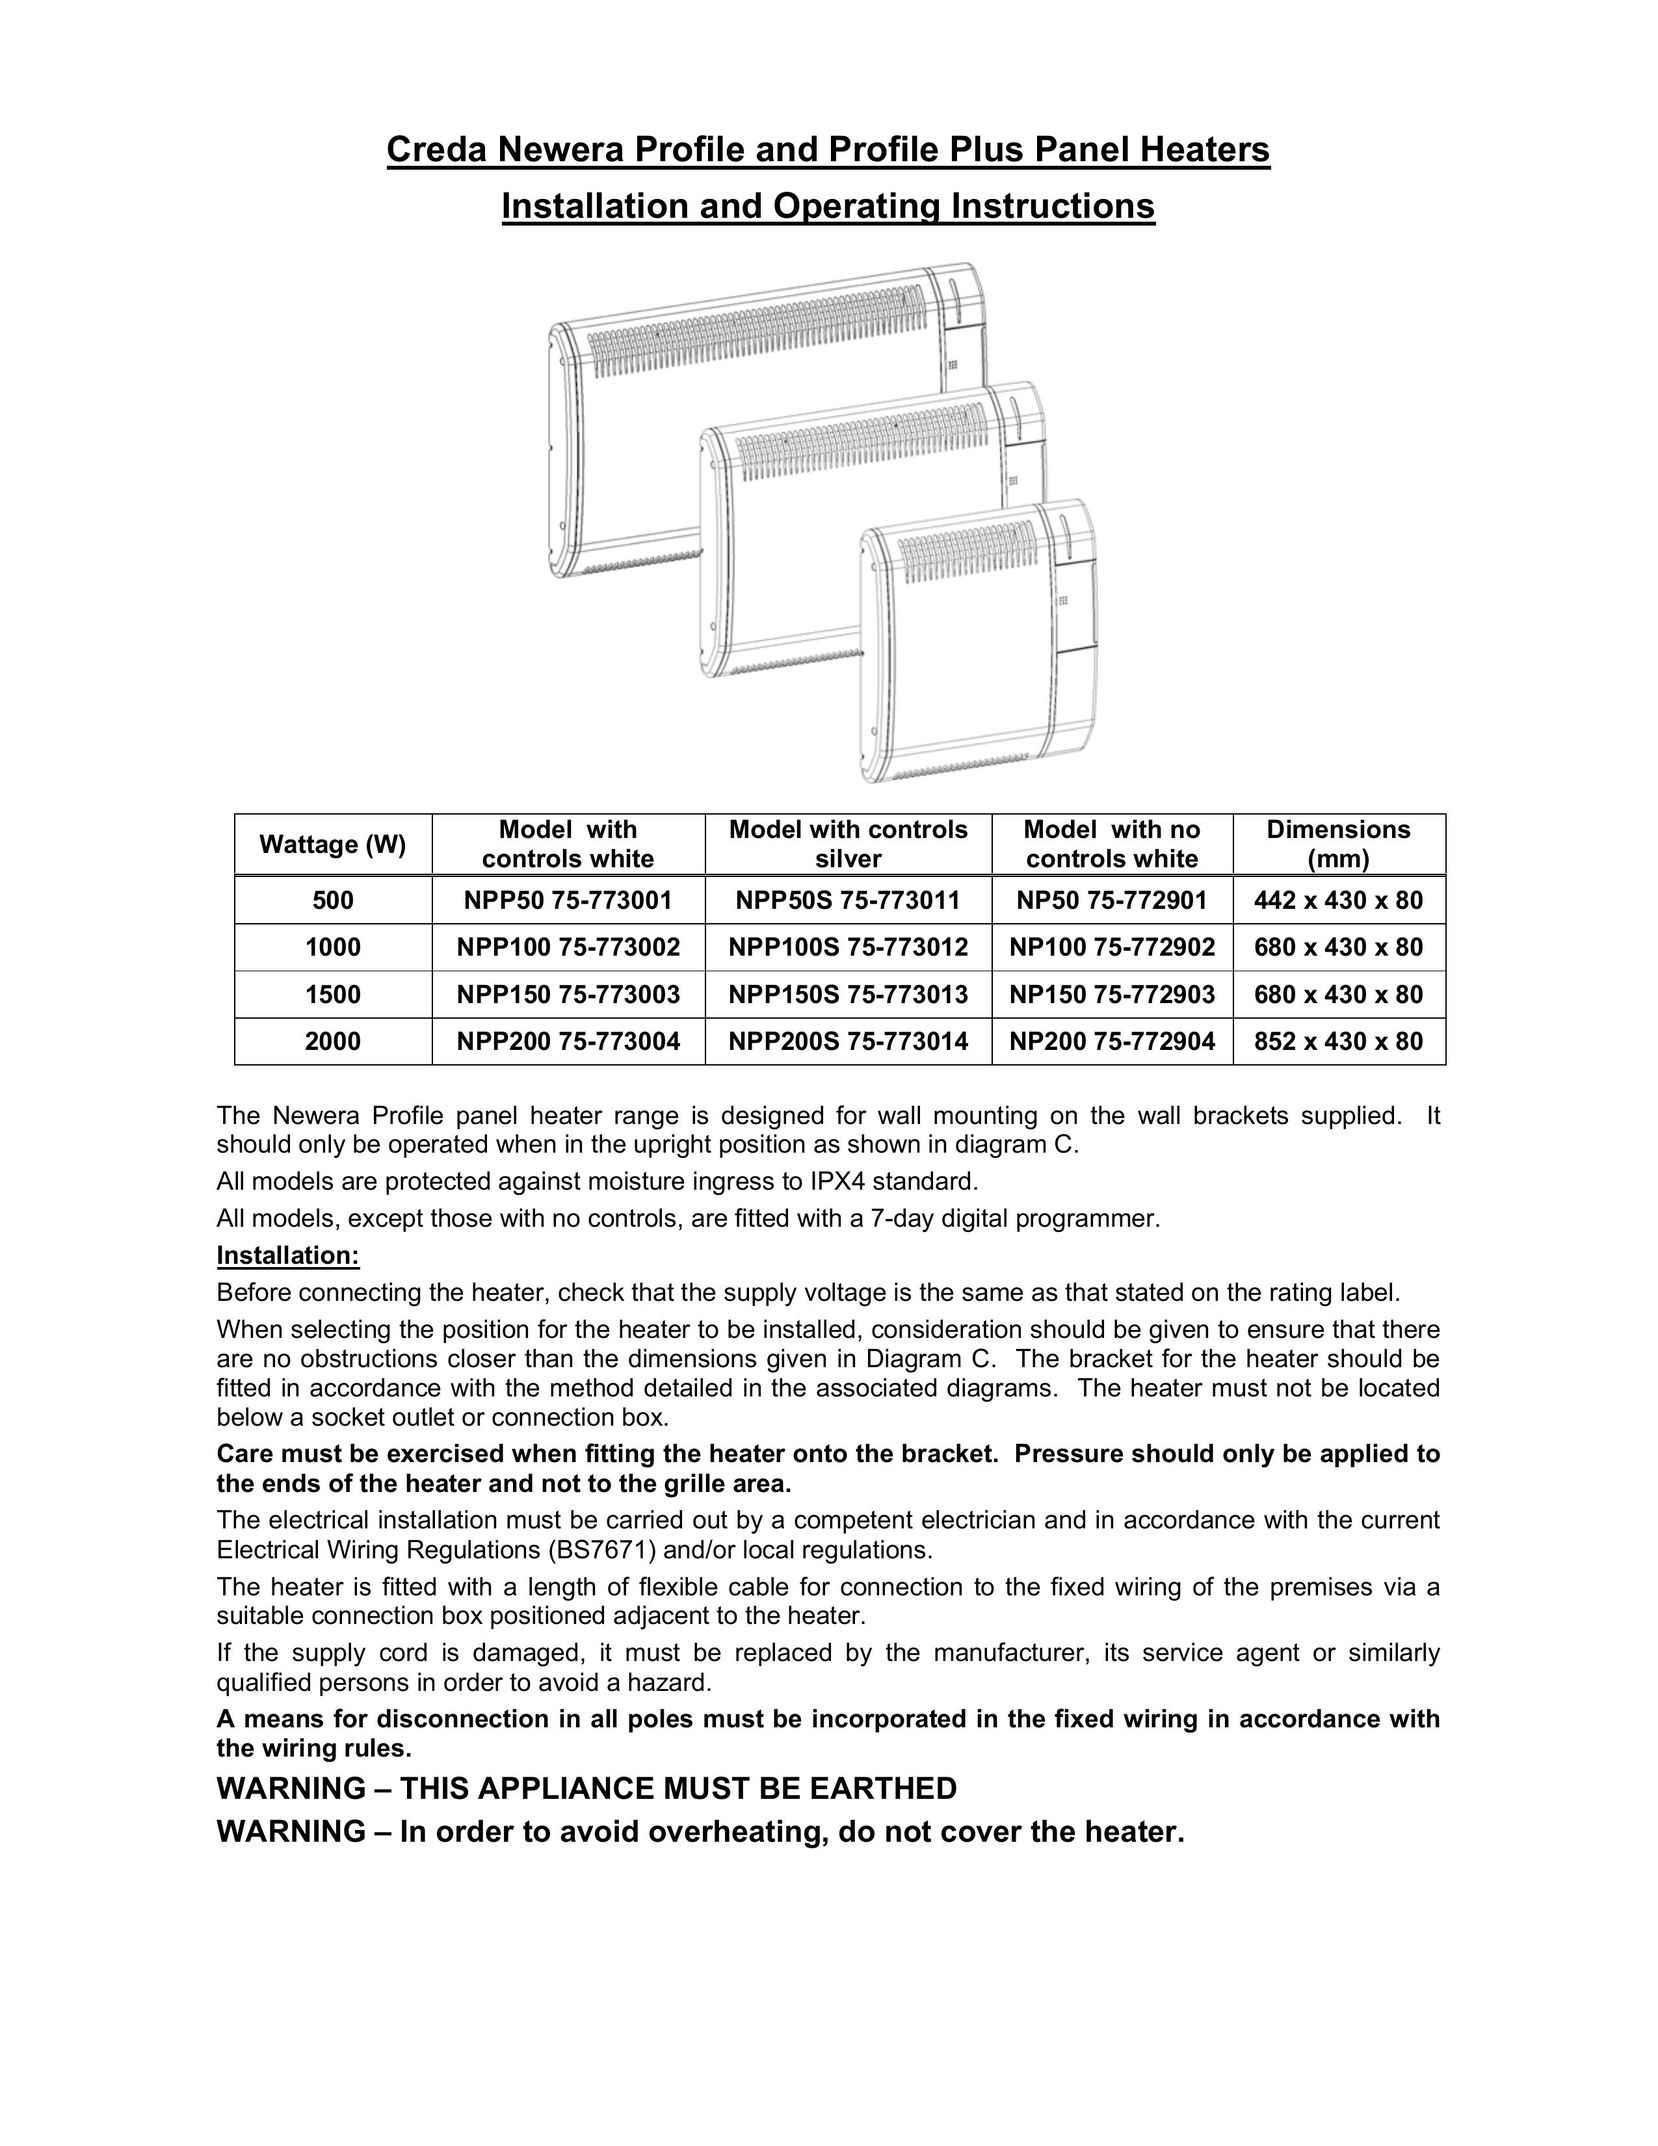 Creda NPP50 75-773001 Air Conditioner User Manual